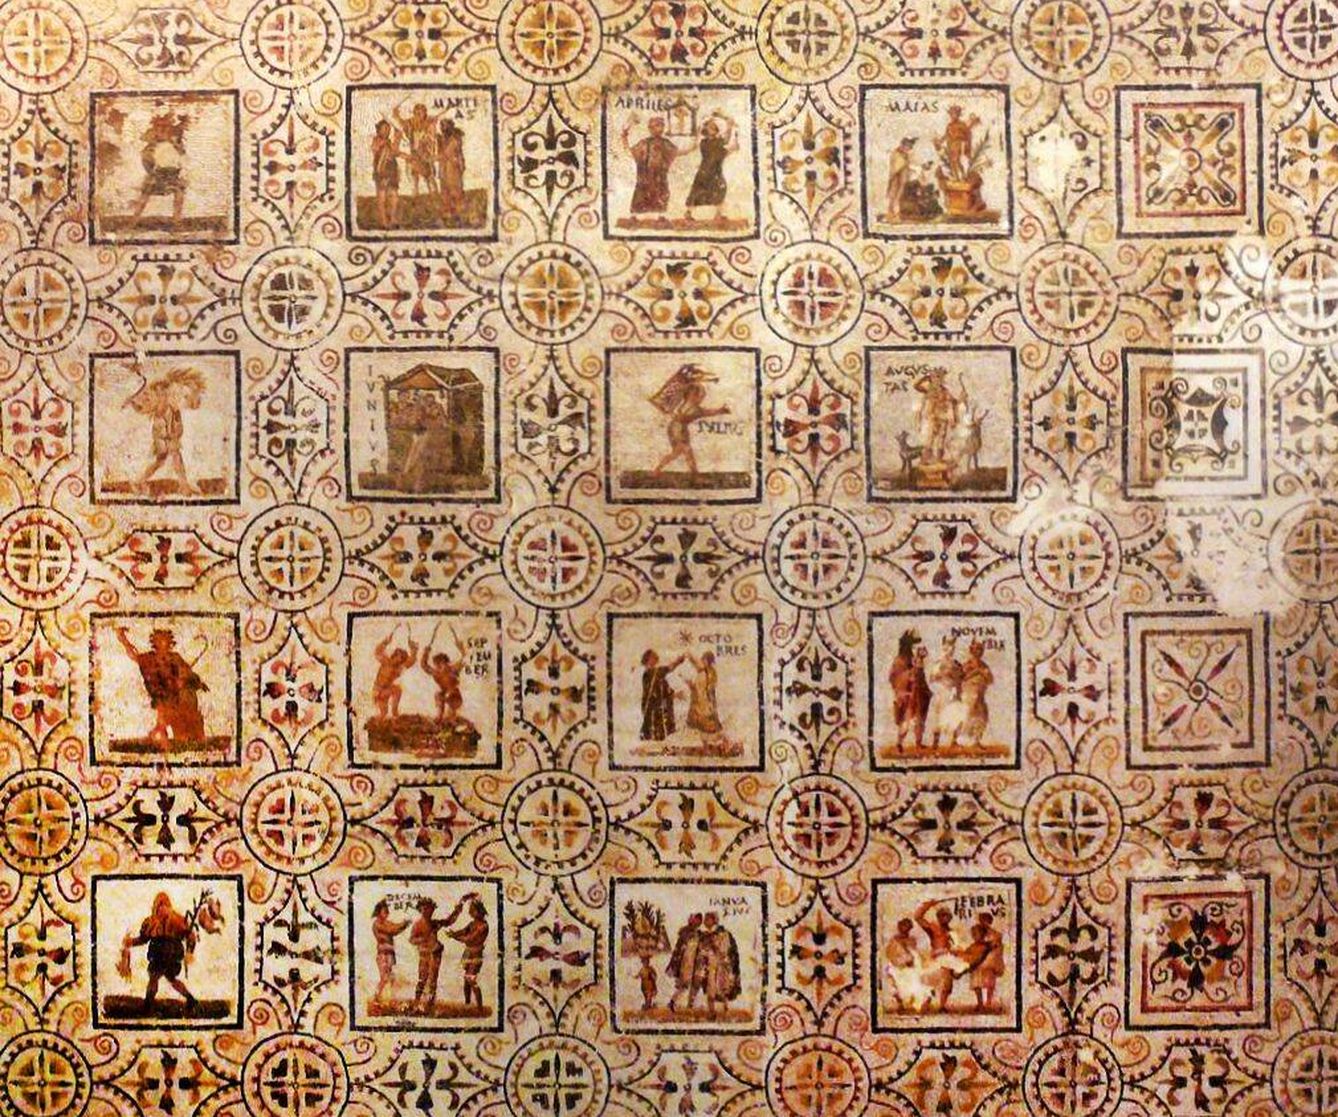 Calendario romano en mosaico.